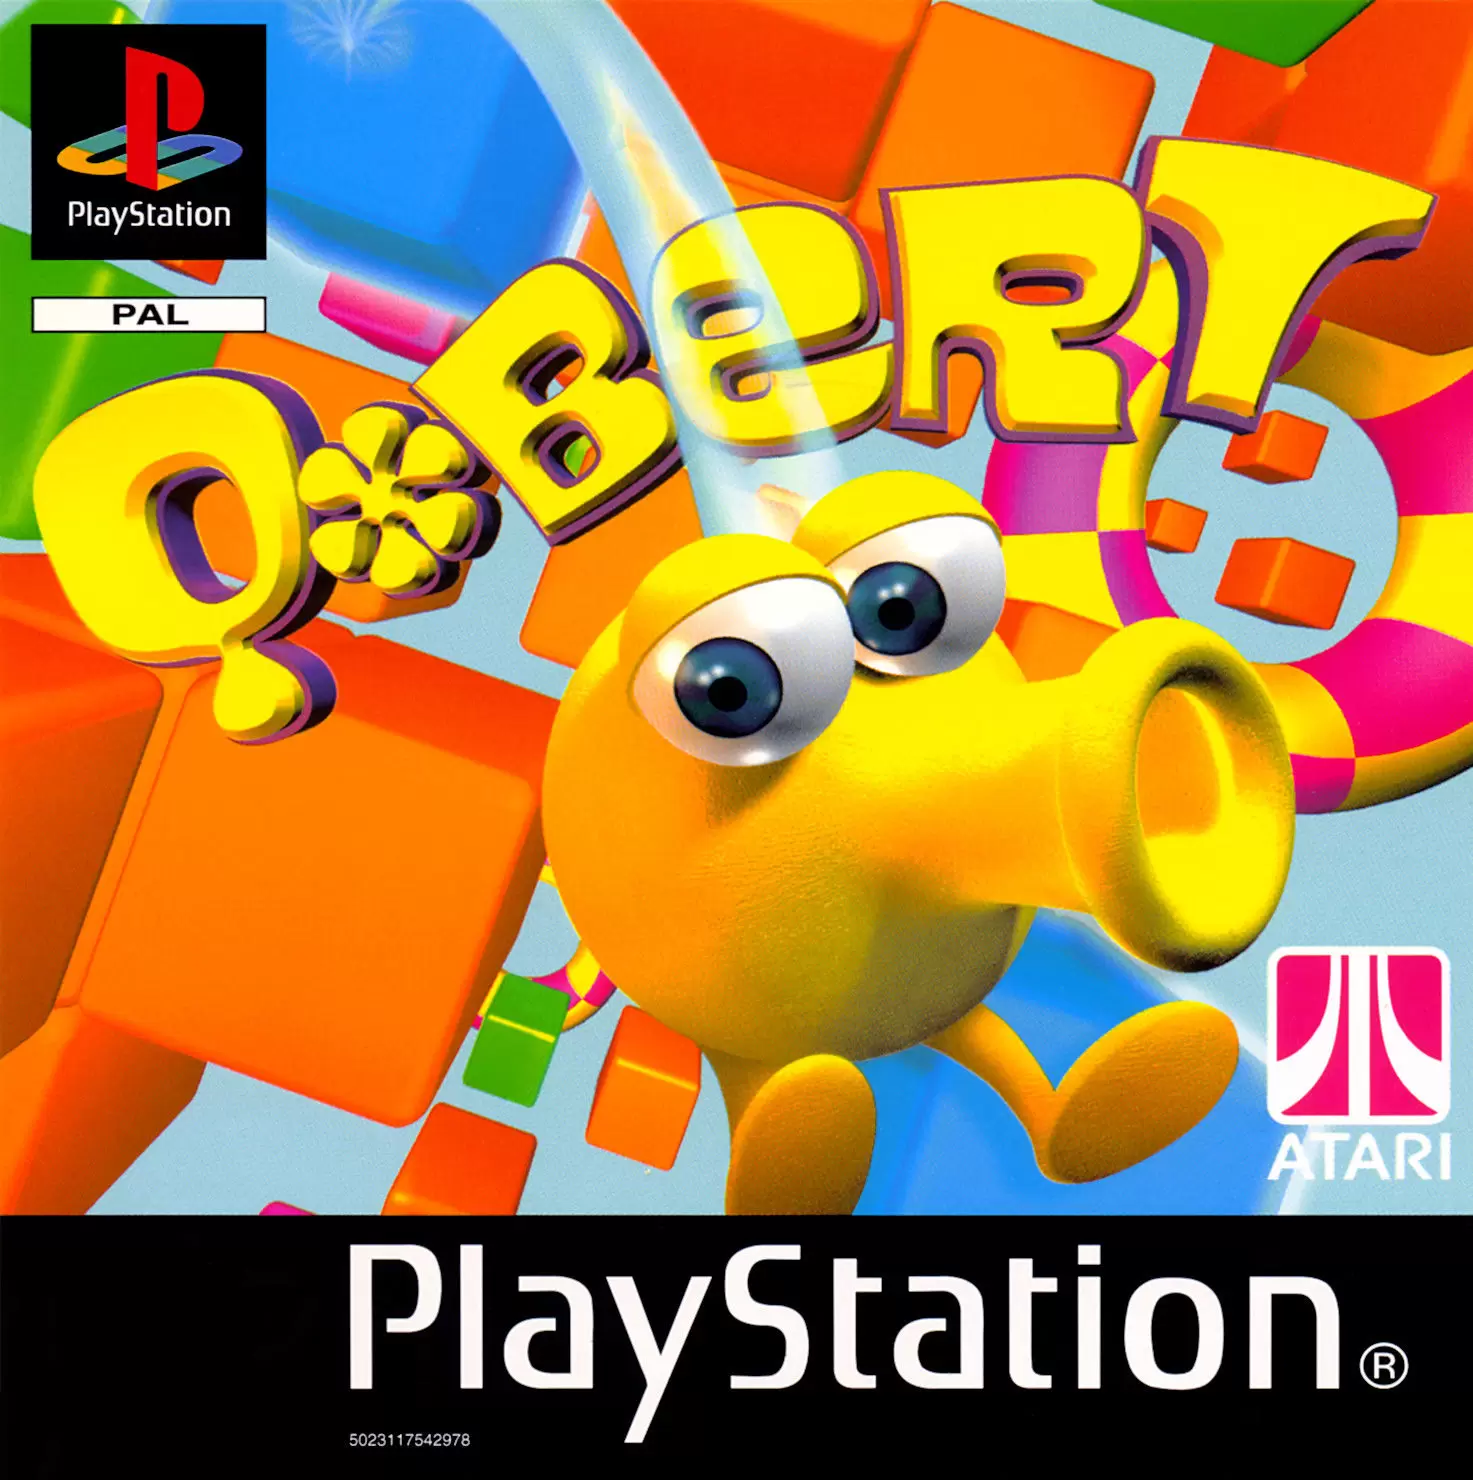 Playstation games - Q*bert